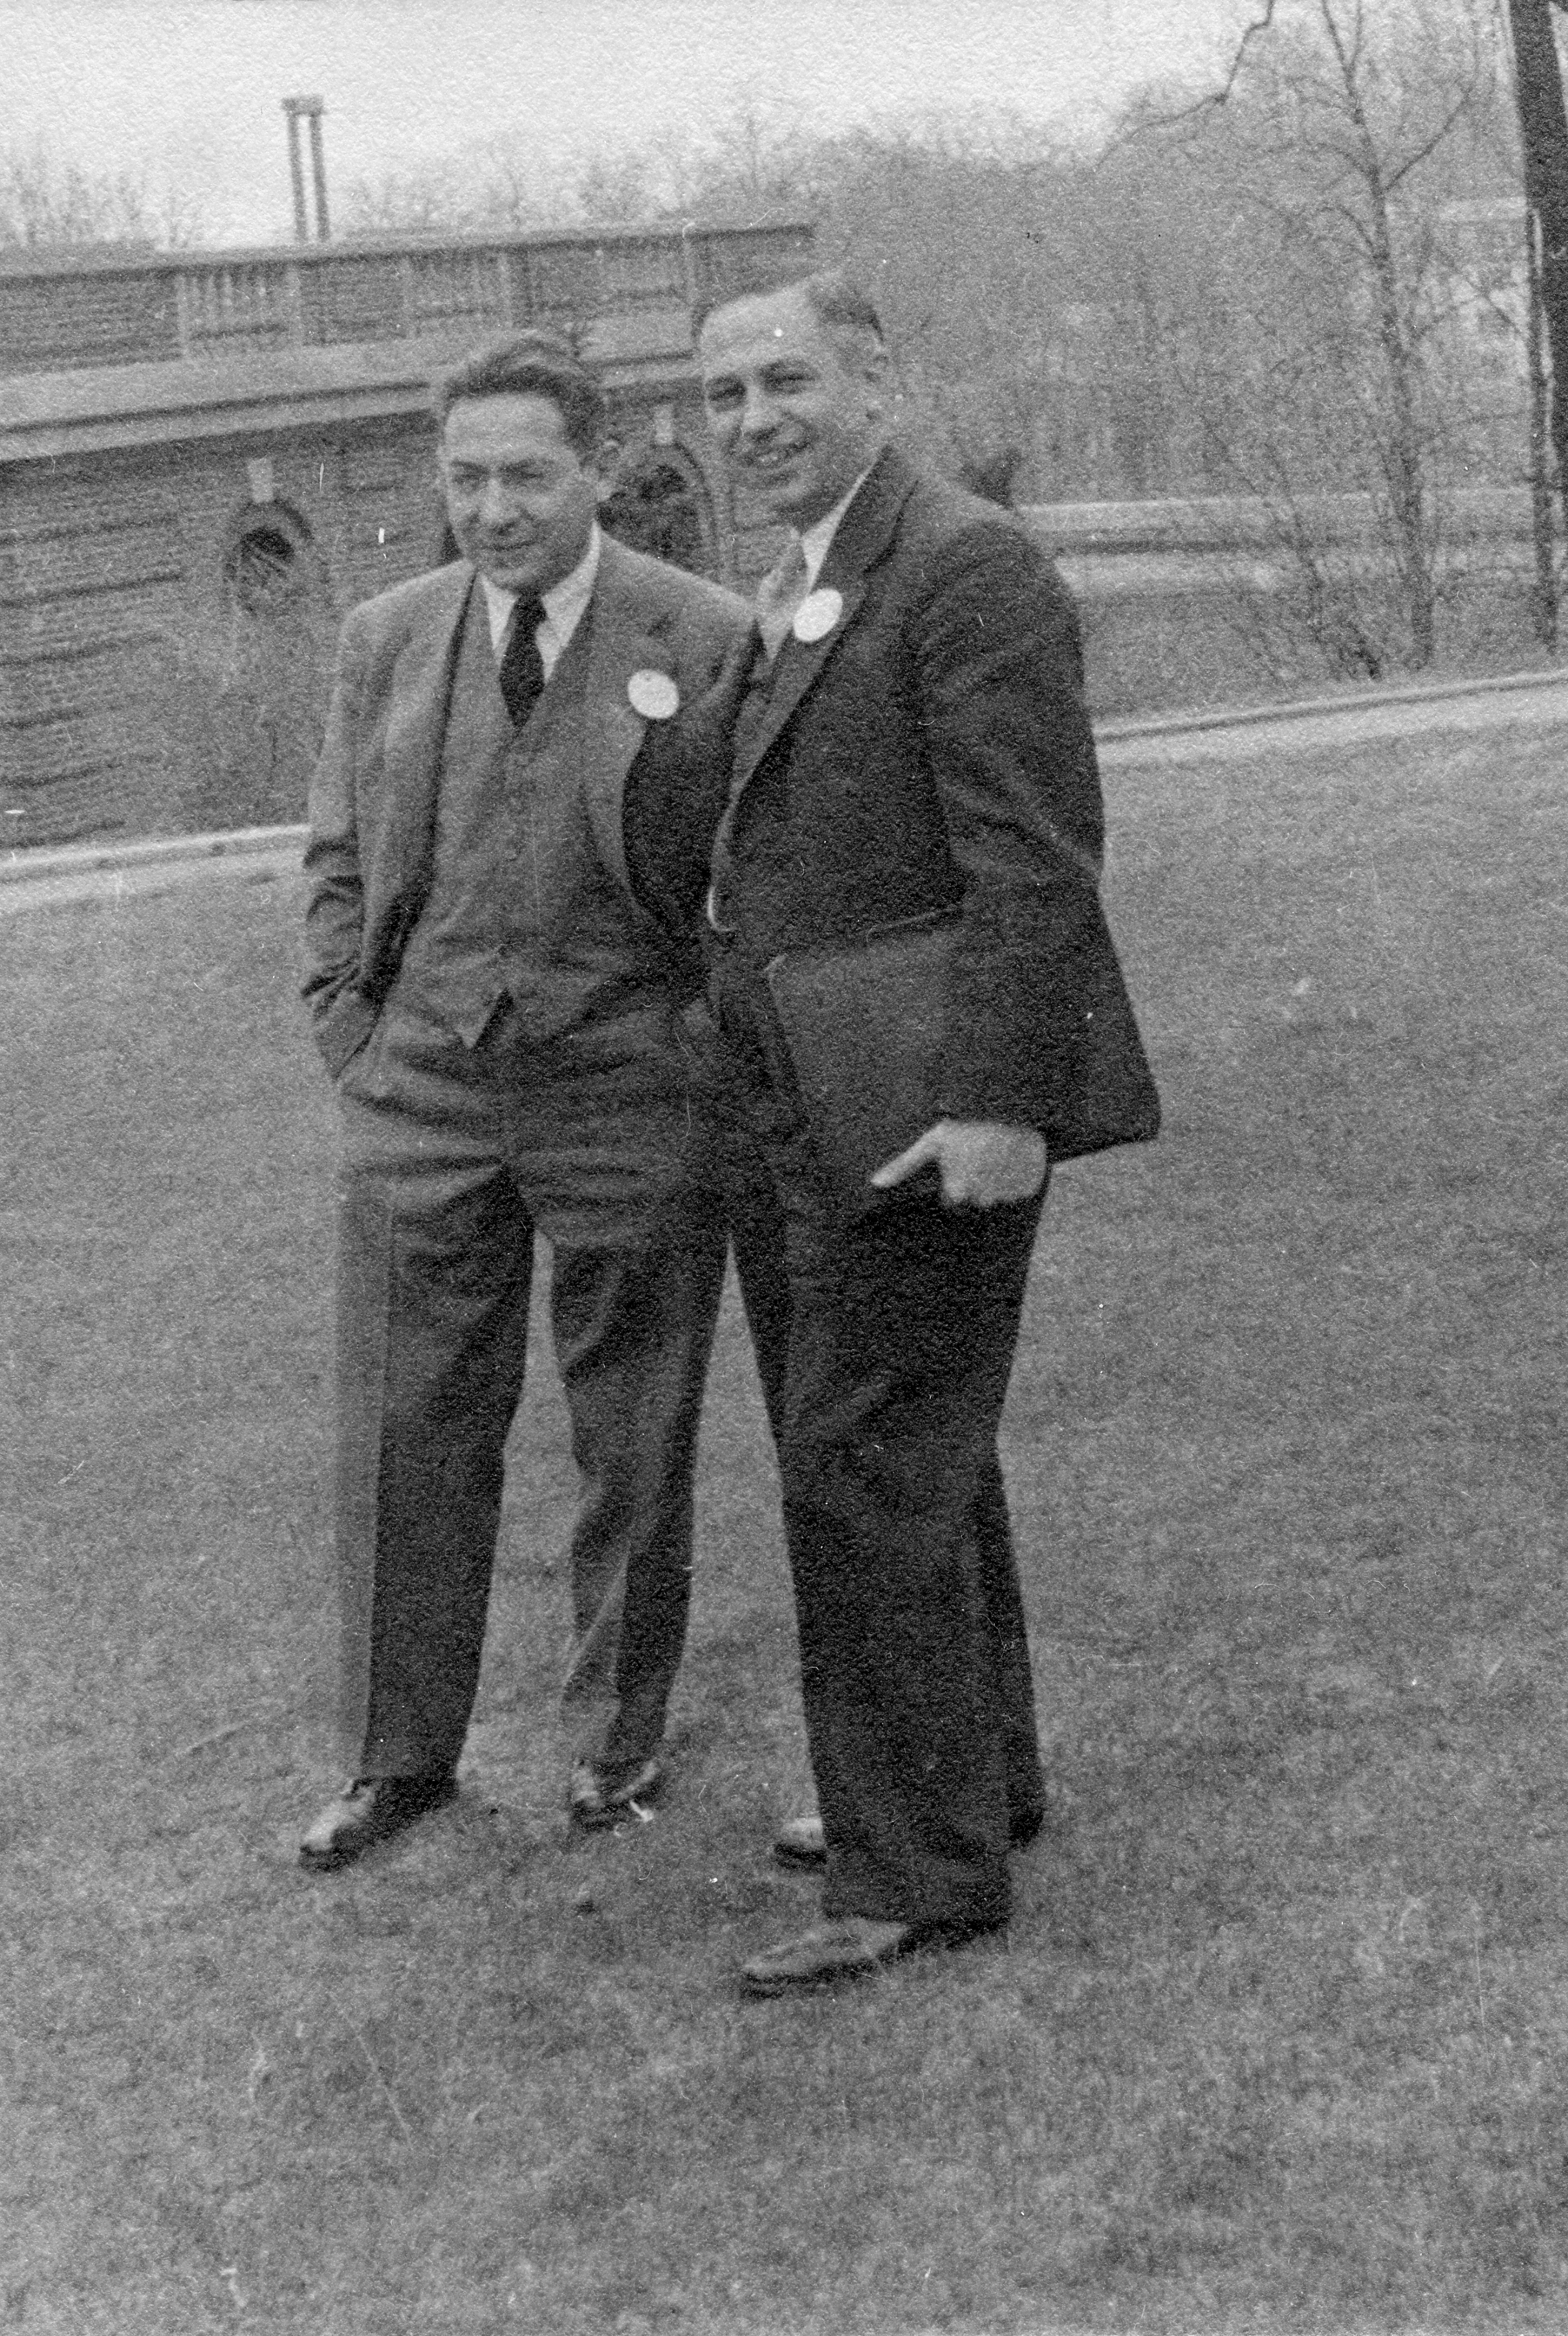 Isidor I. Rabi and Lee Alvin DuBridge in Washington D.C.